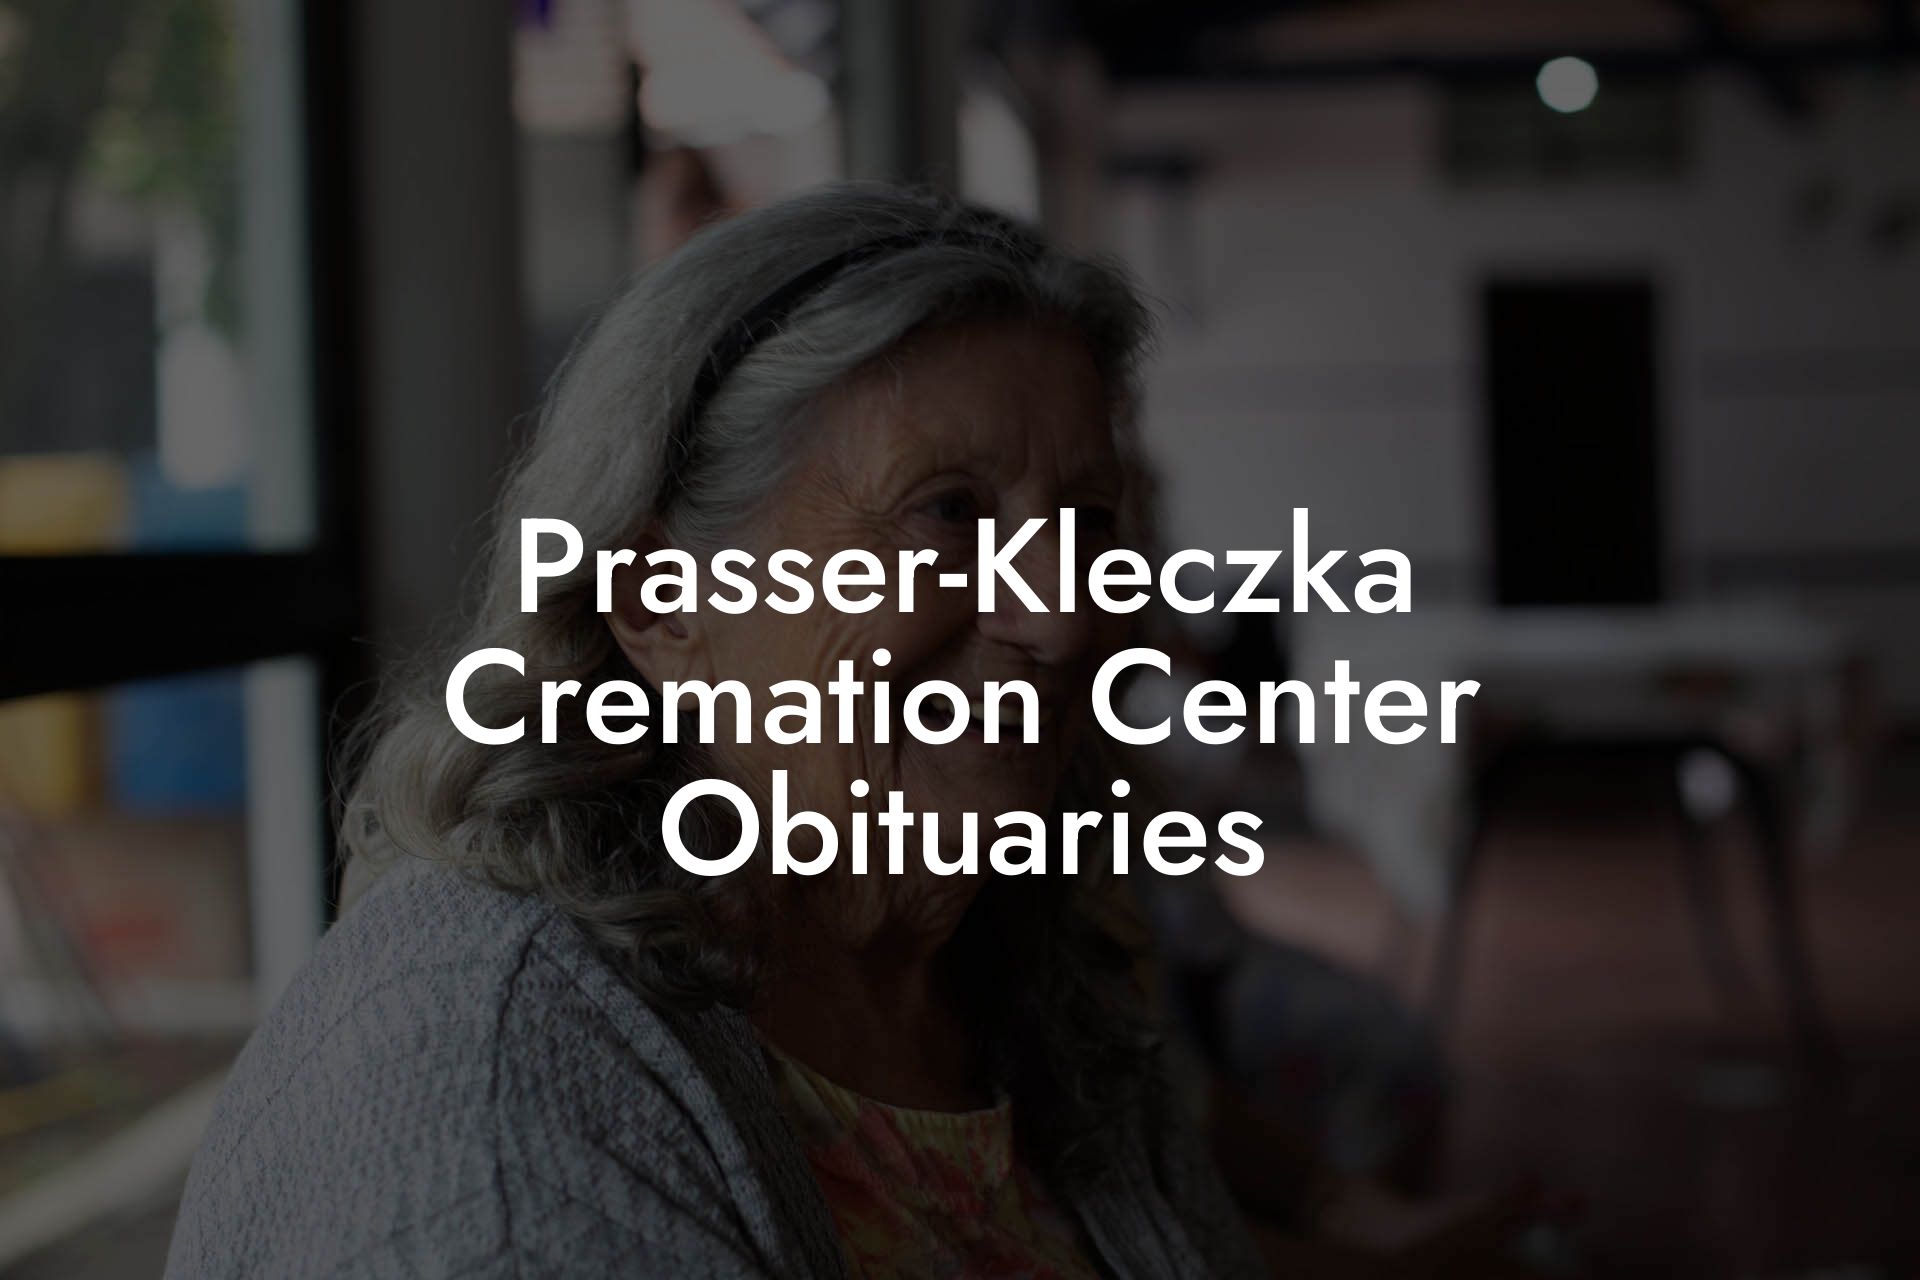 Prasser-Kleczka Cremation Center Obituaries